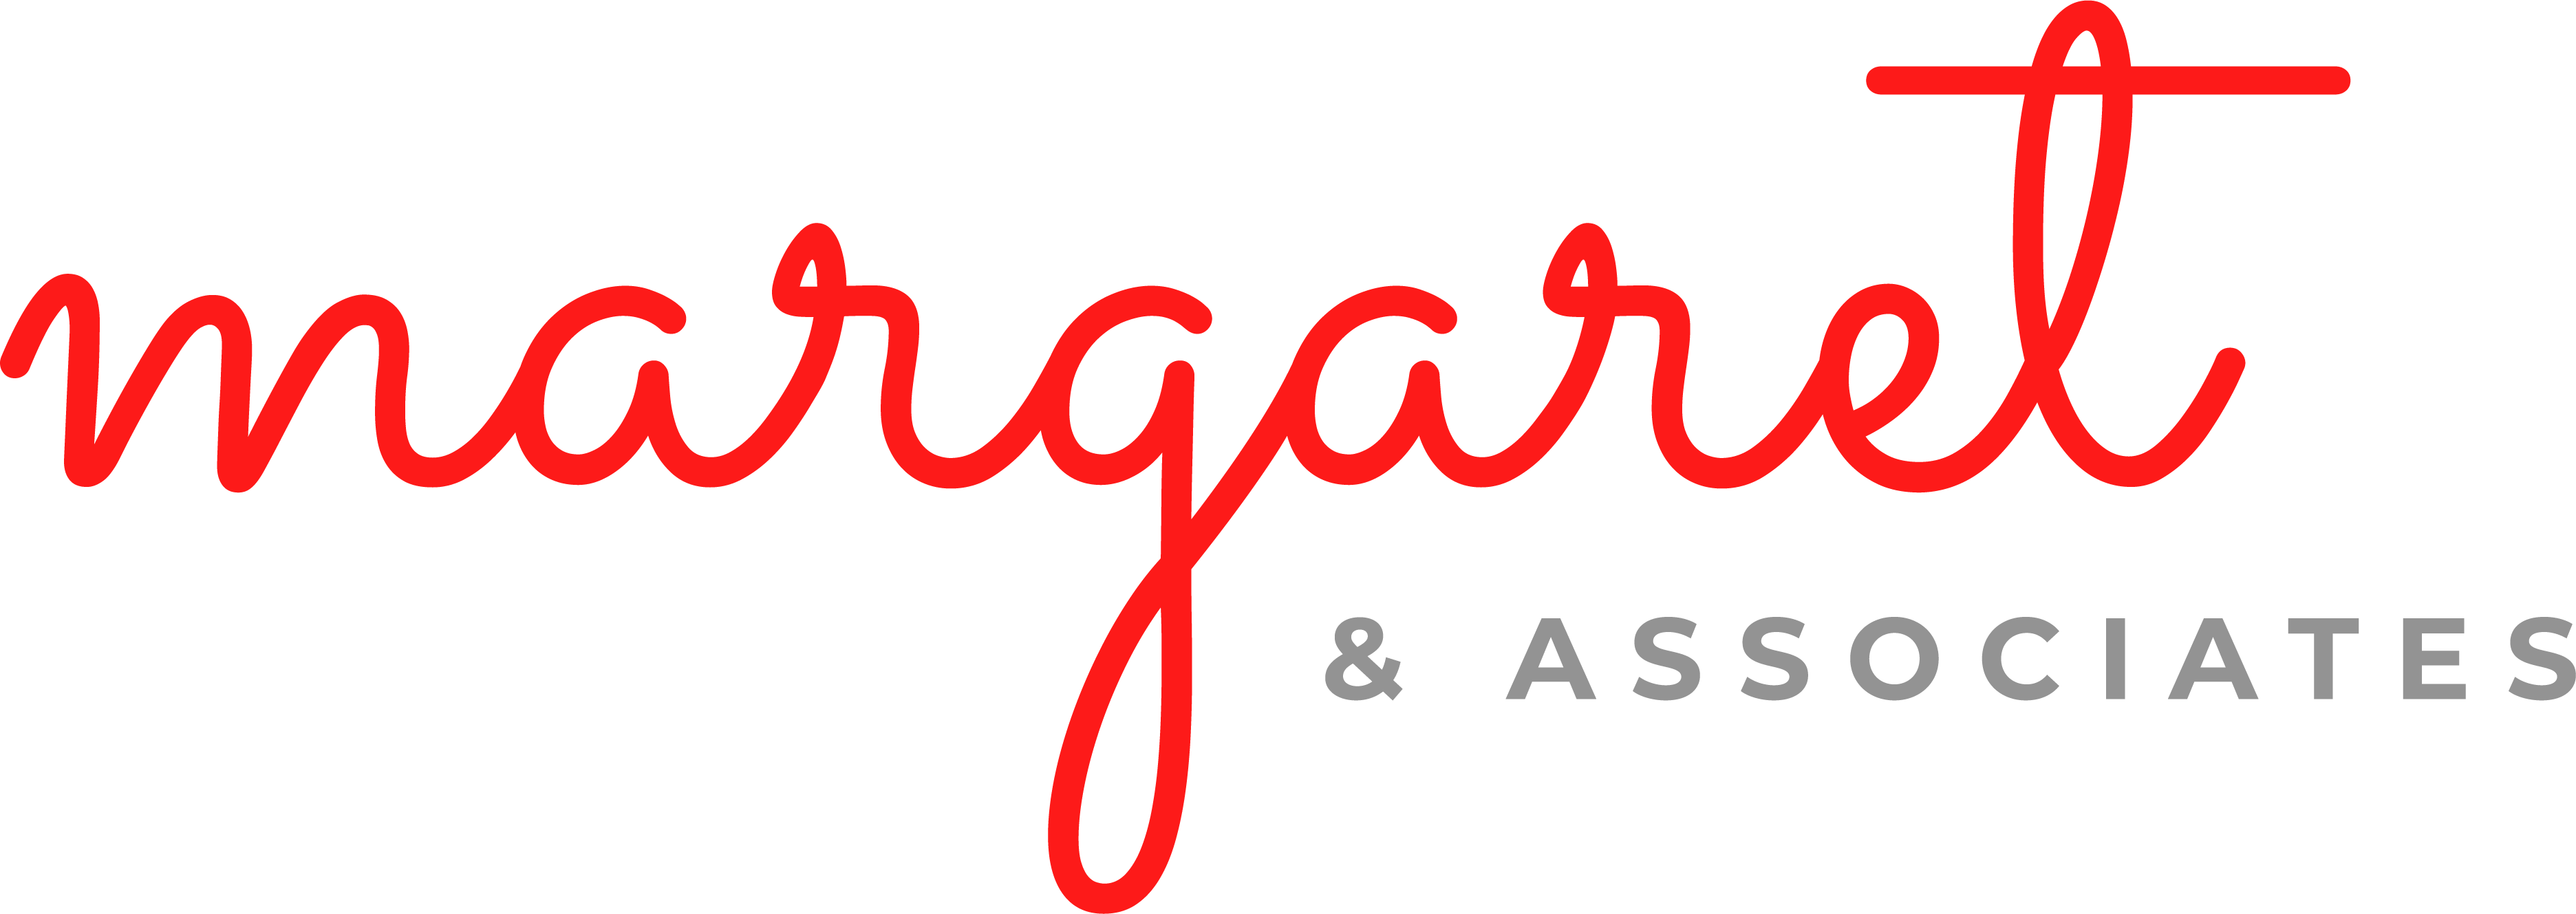 Margaret & Associates